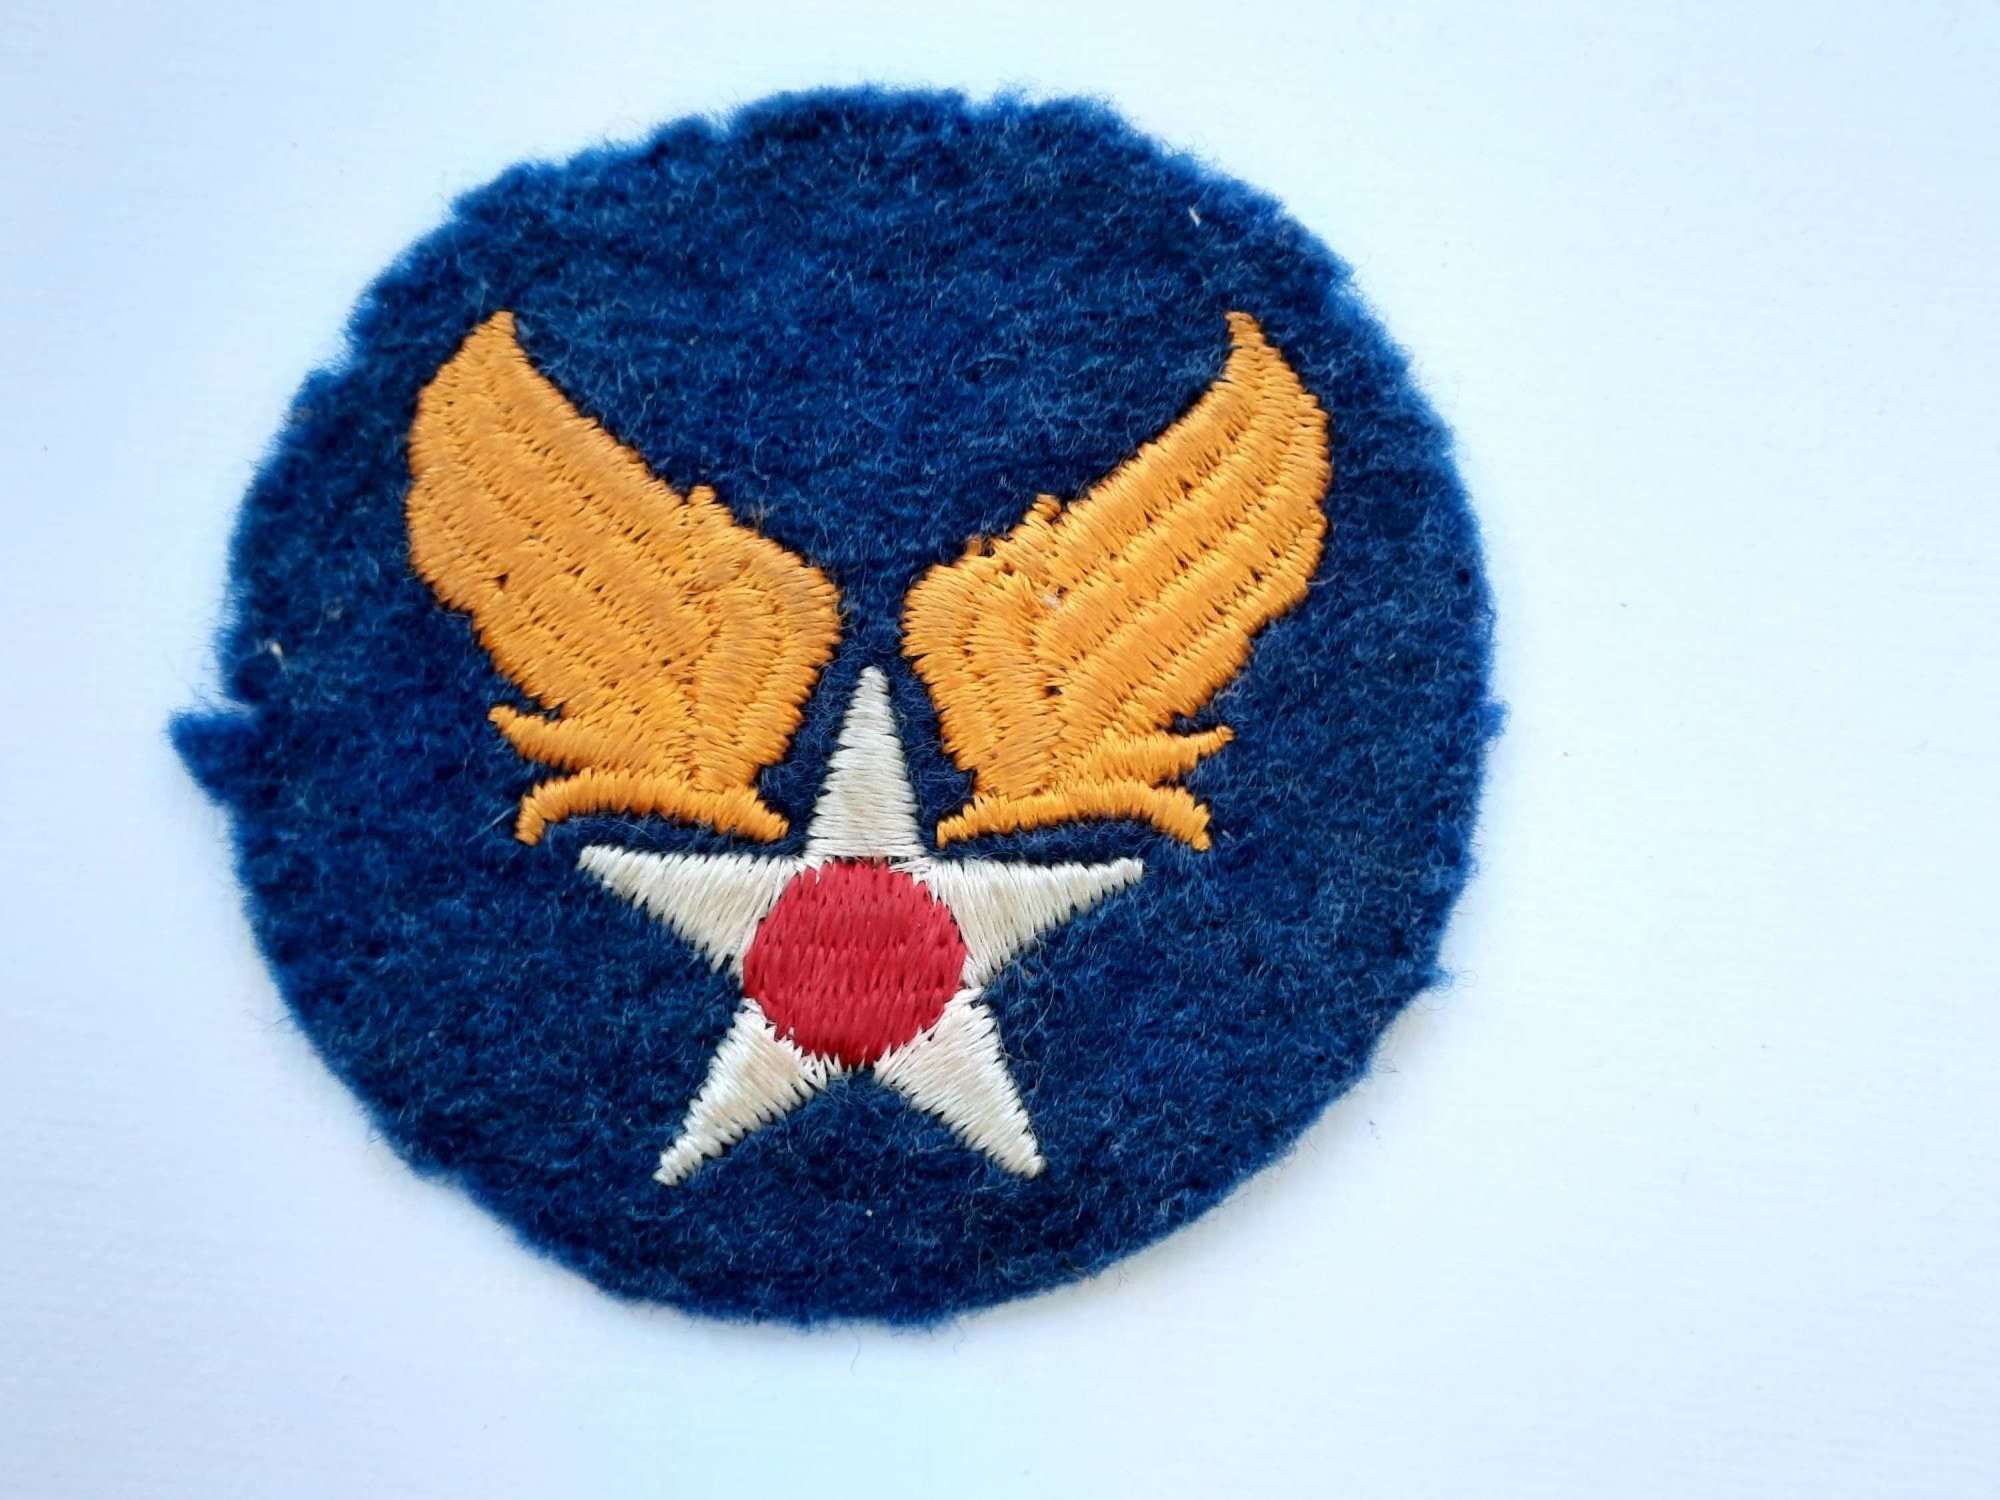 WW2 USAAF Headquarters Patch